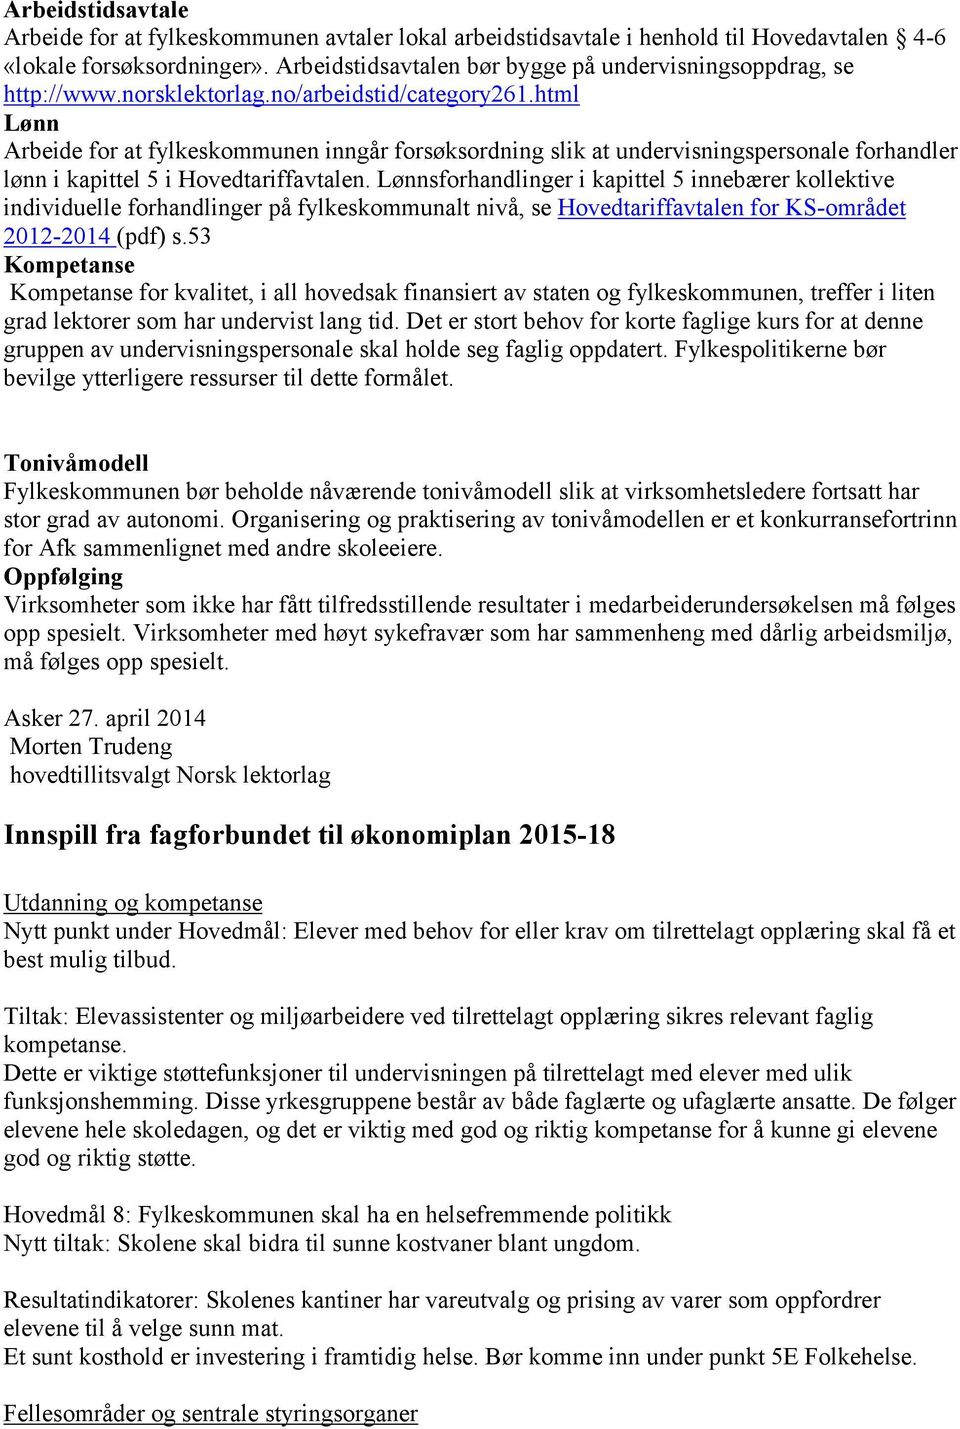 html Lønn Arbeide for at fylkeskommunen inngår forsøksordning slik at undervisningspersonale forhandler lønn i kapittel 5 i Hovedtariffavtalen.